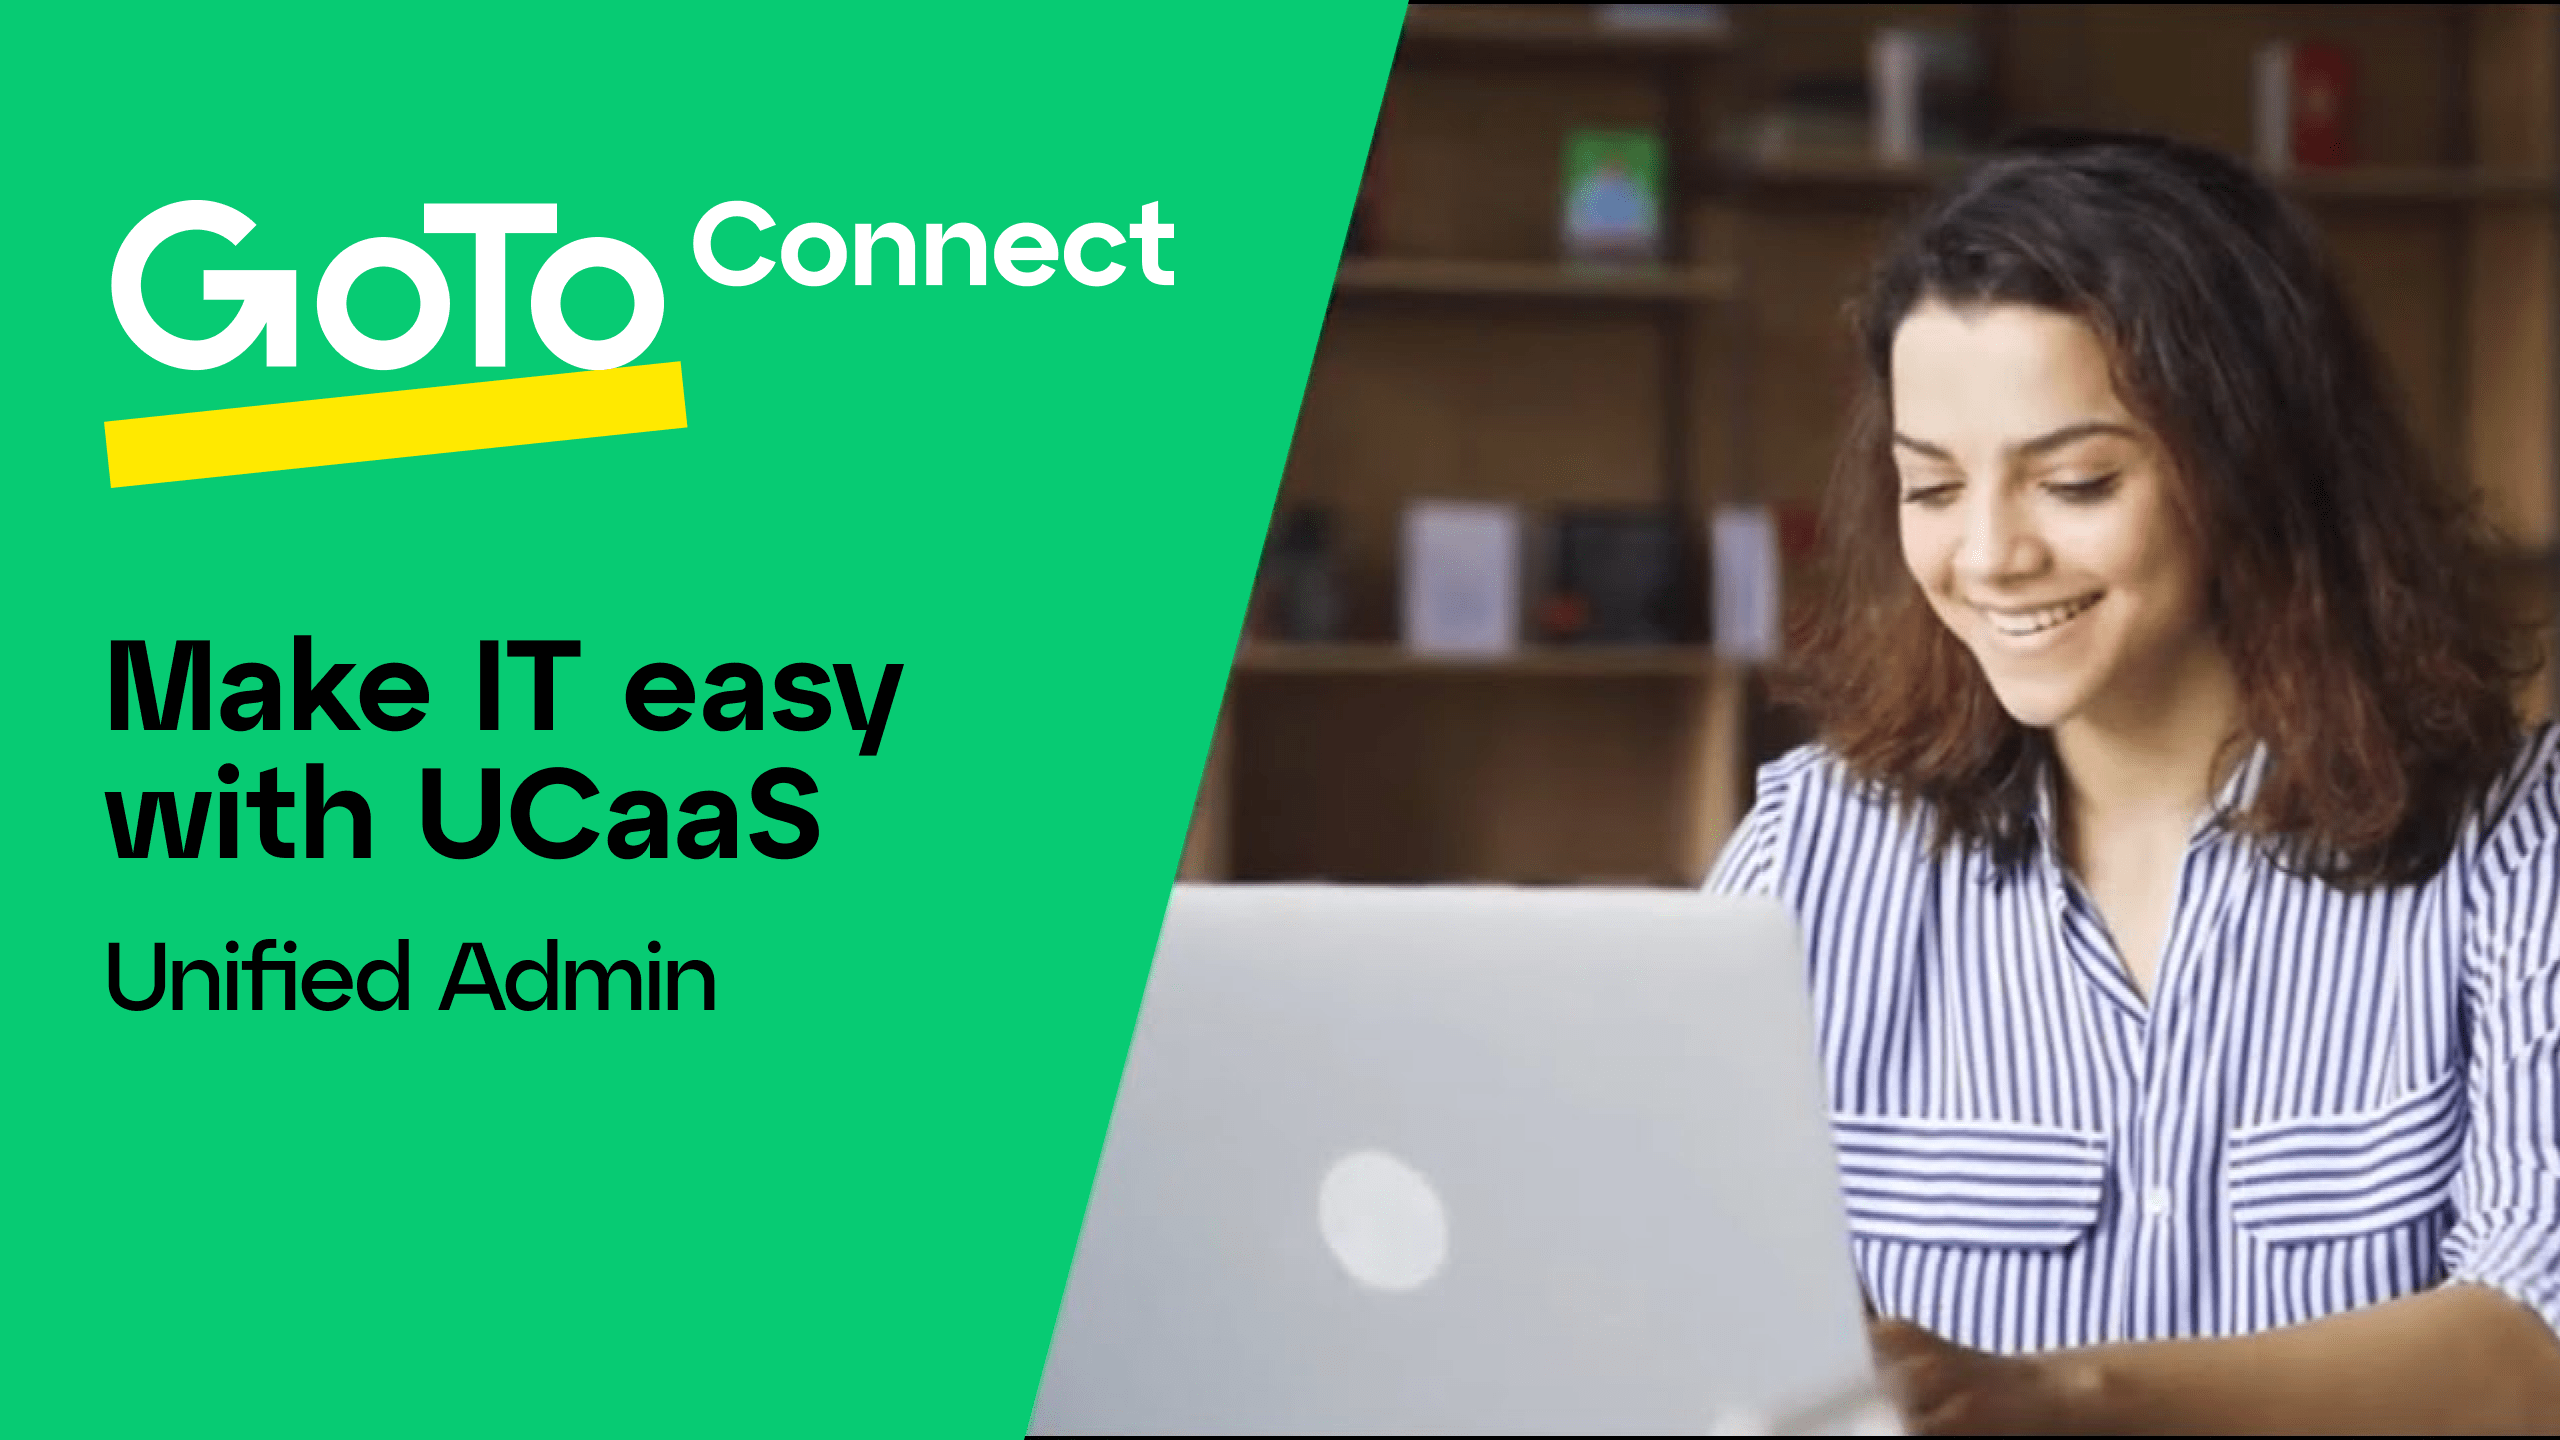 Hier klicken, um das Video „UCaaS-Admin-Lösung von GoTo Connect“ abzuspielen.